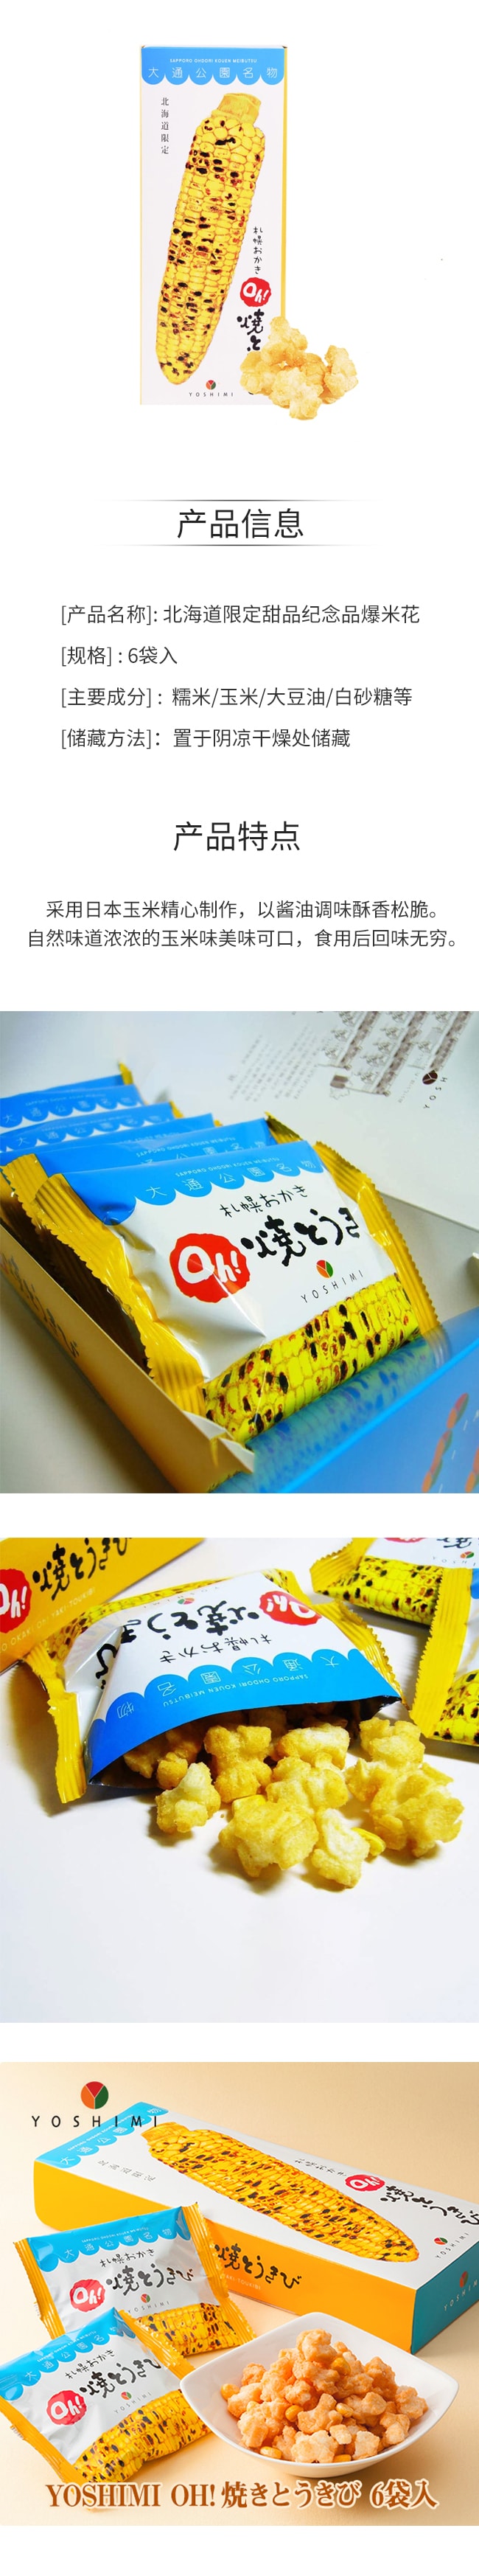 【日本直邮】北海道限定甜品纪念品爆米花6袋入